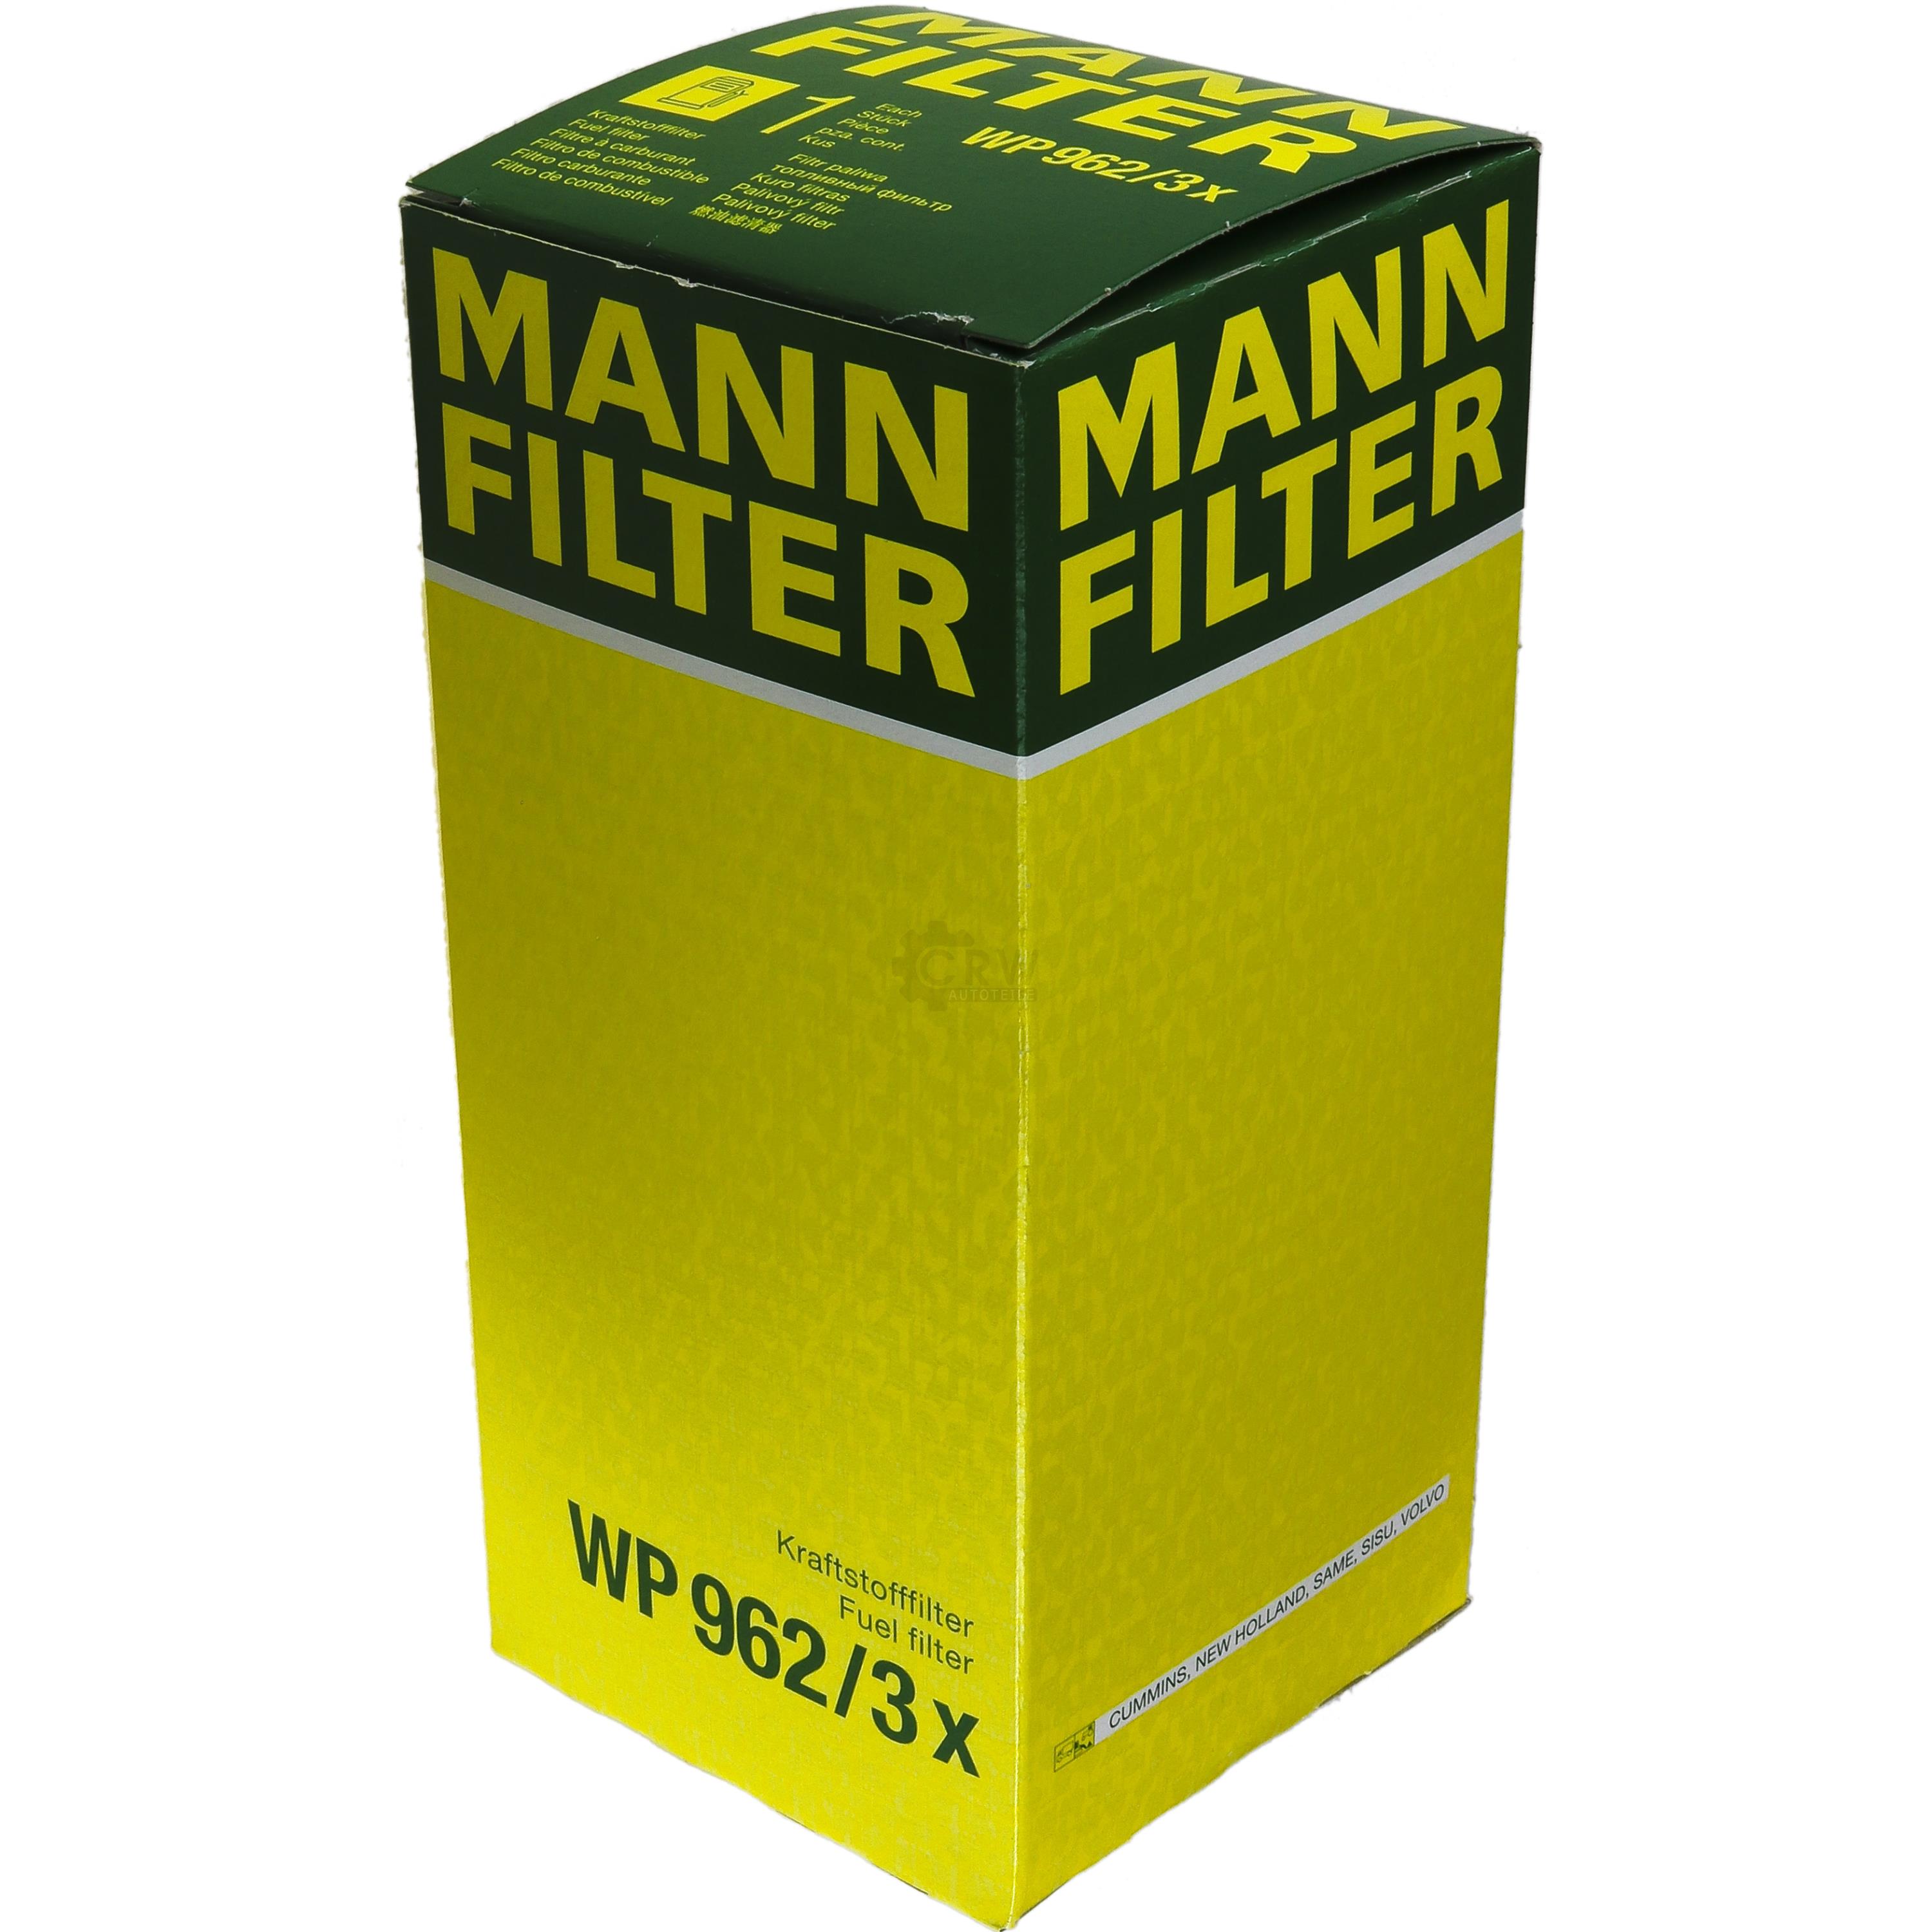 MANN Kraftstofffilter WP 962/3 x Fuel Filter